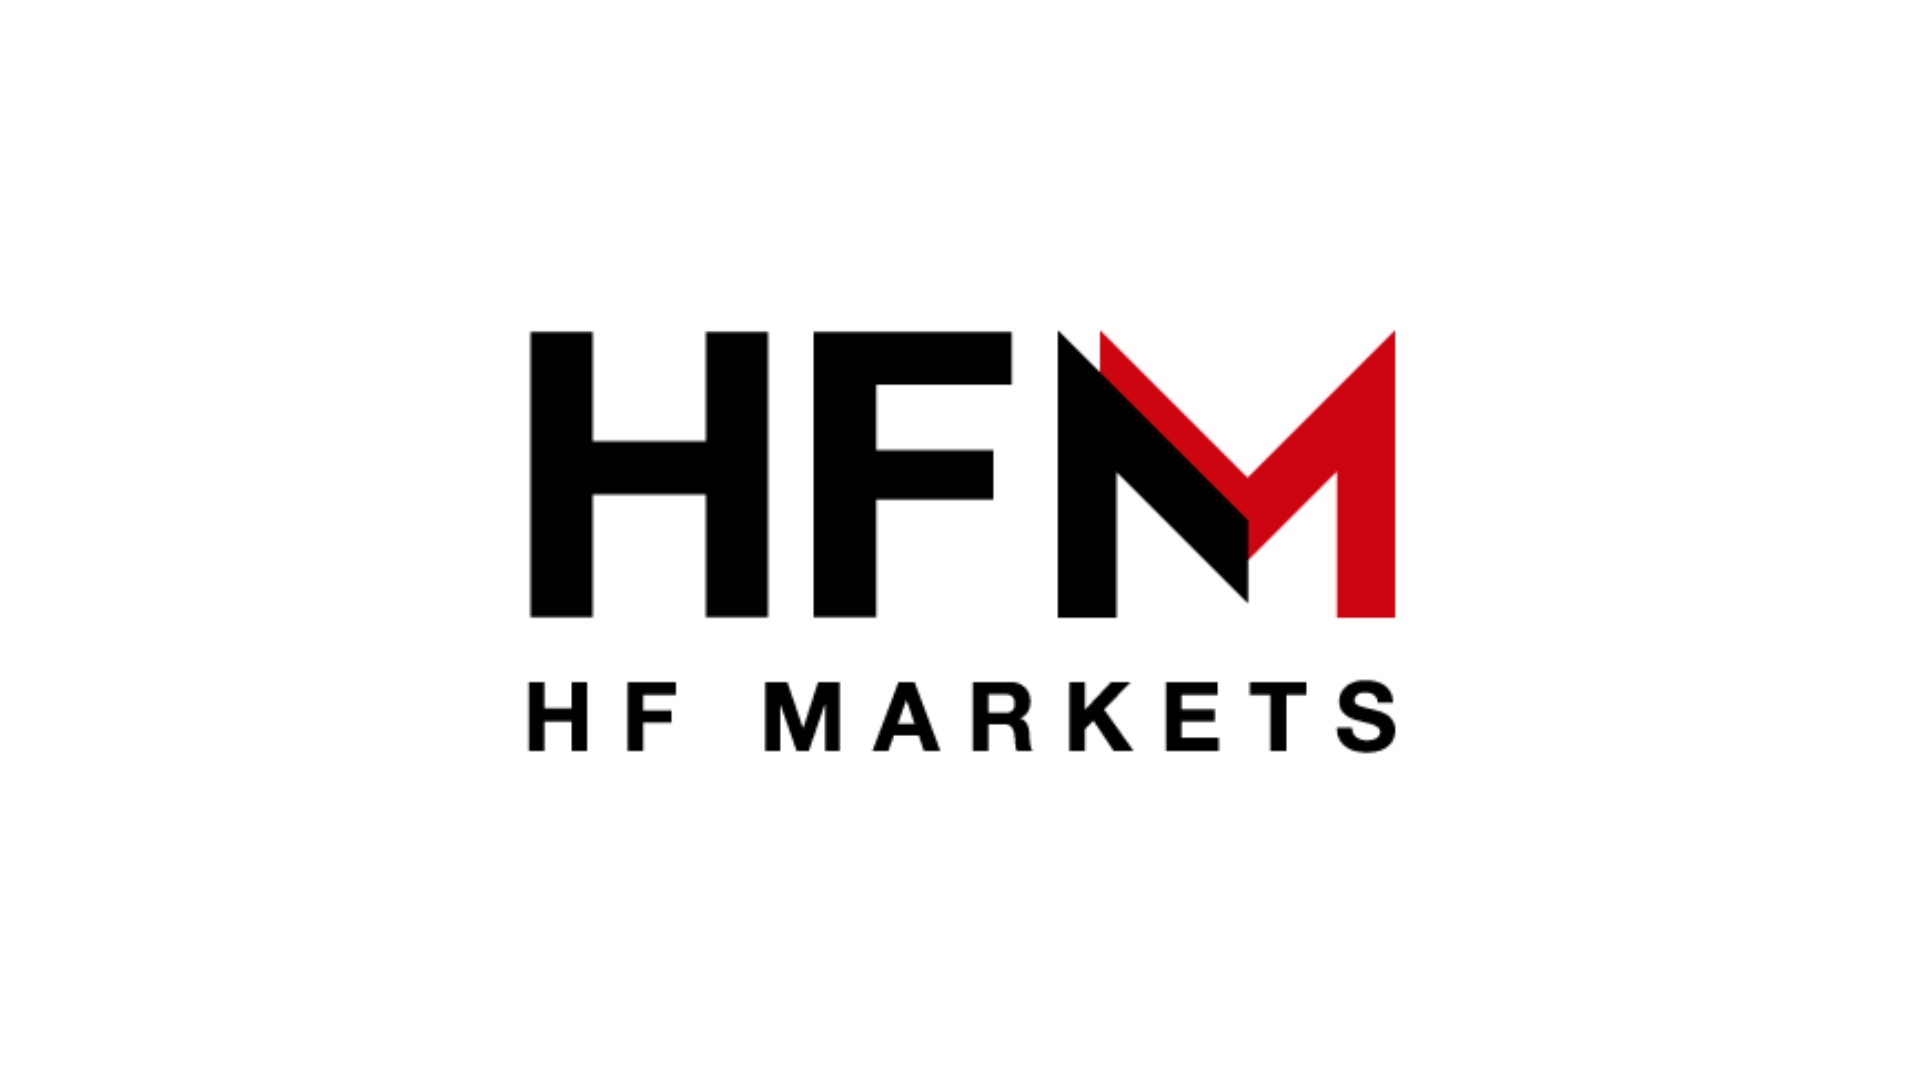 HFM ロゴ